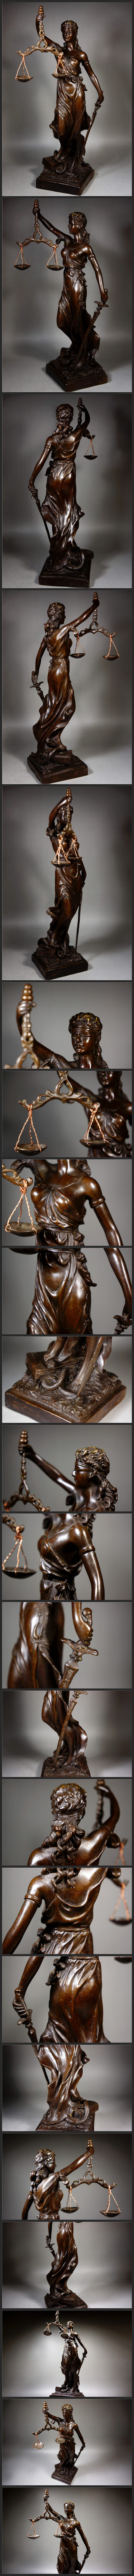 直販格安細工銅製 ギリシア神話 正義の女神 テミス造像高彫 鎮宅開運置物 極上質 高29.5cm 1.45kg 仏像